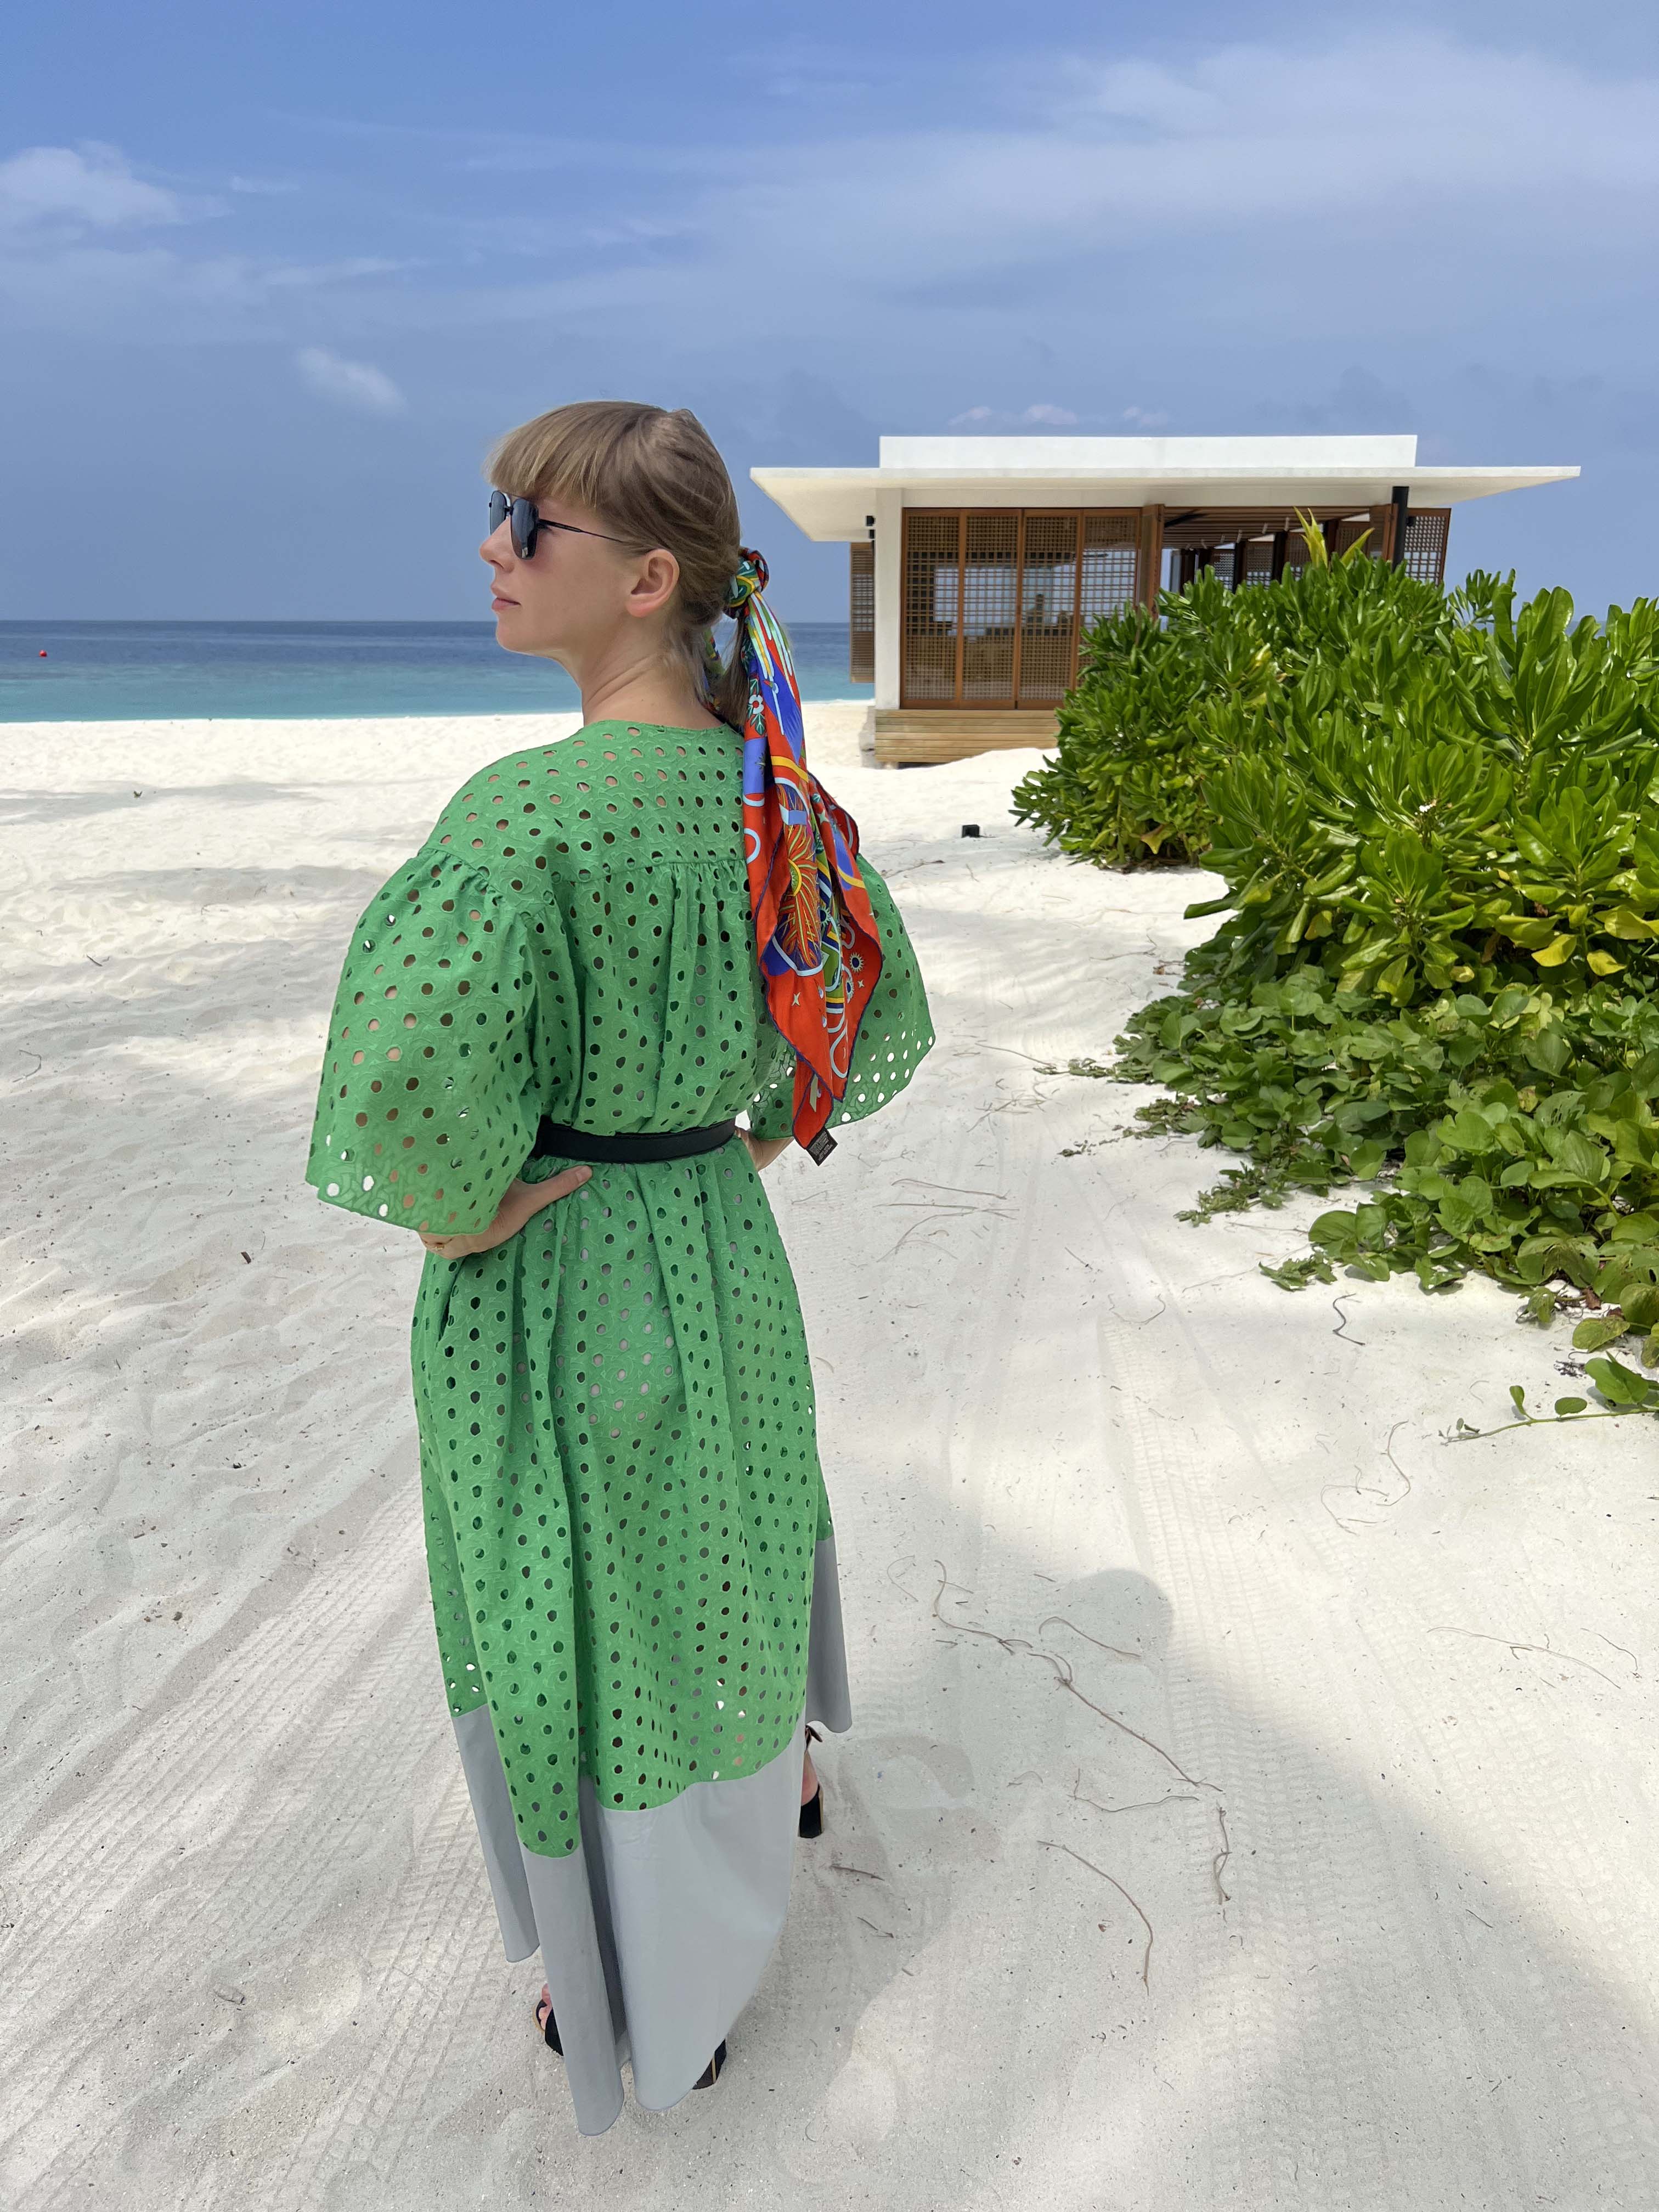 Пять причин провести отпуск в бутик-отеле Alila Kothaifaru Maldives. Выбор Вики Газинской (фото 6)